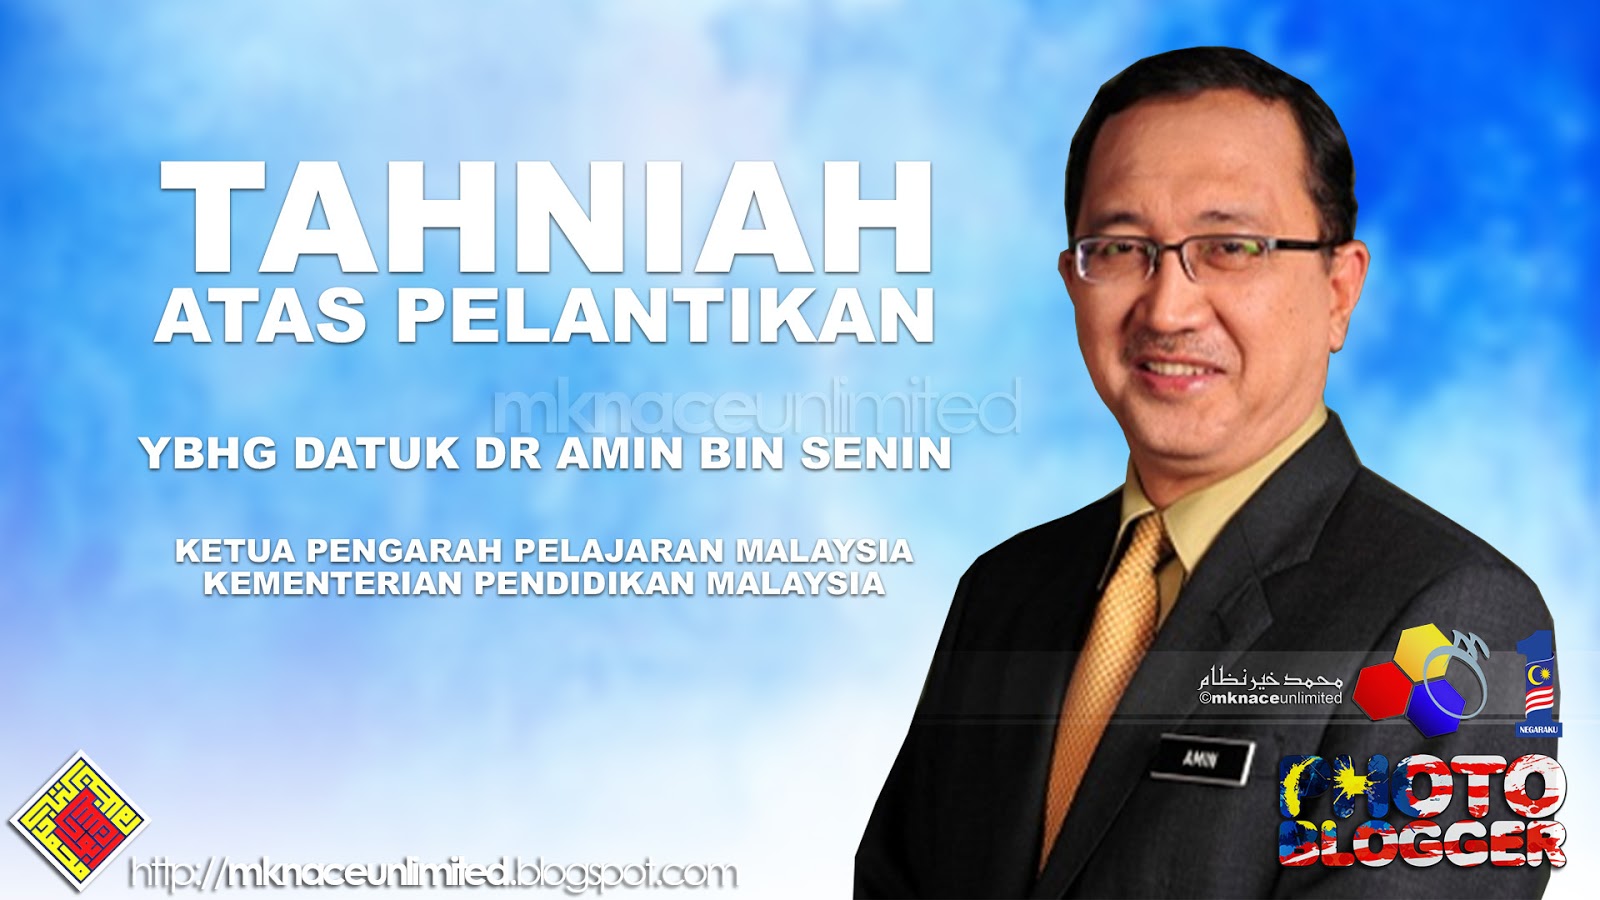 Datuk Dr Amin Bin Senin Dilantik Sebagai Ketua Pengarah Pelajaran Malaysia Kementerian Pendidikan Malaysia